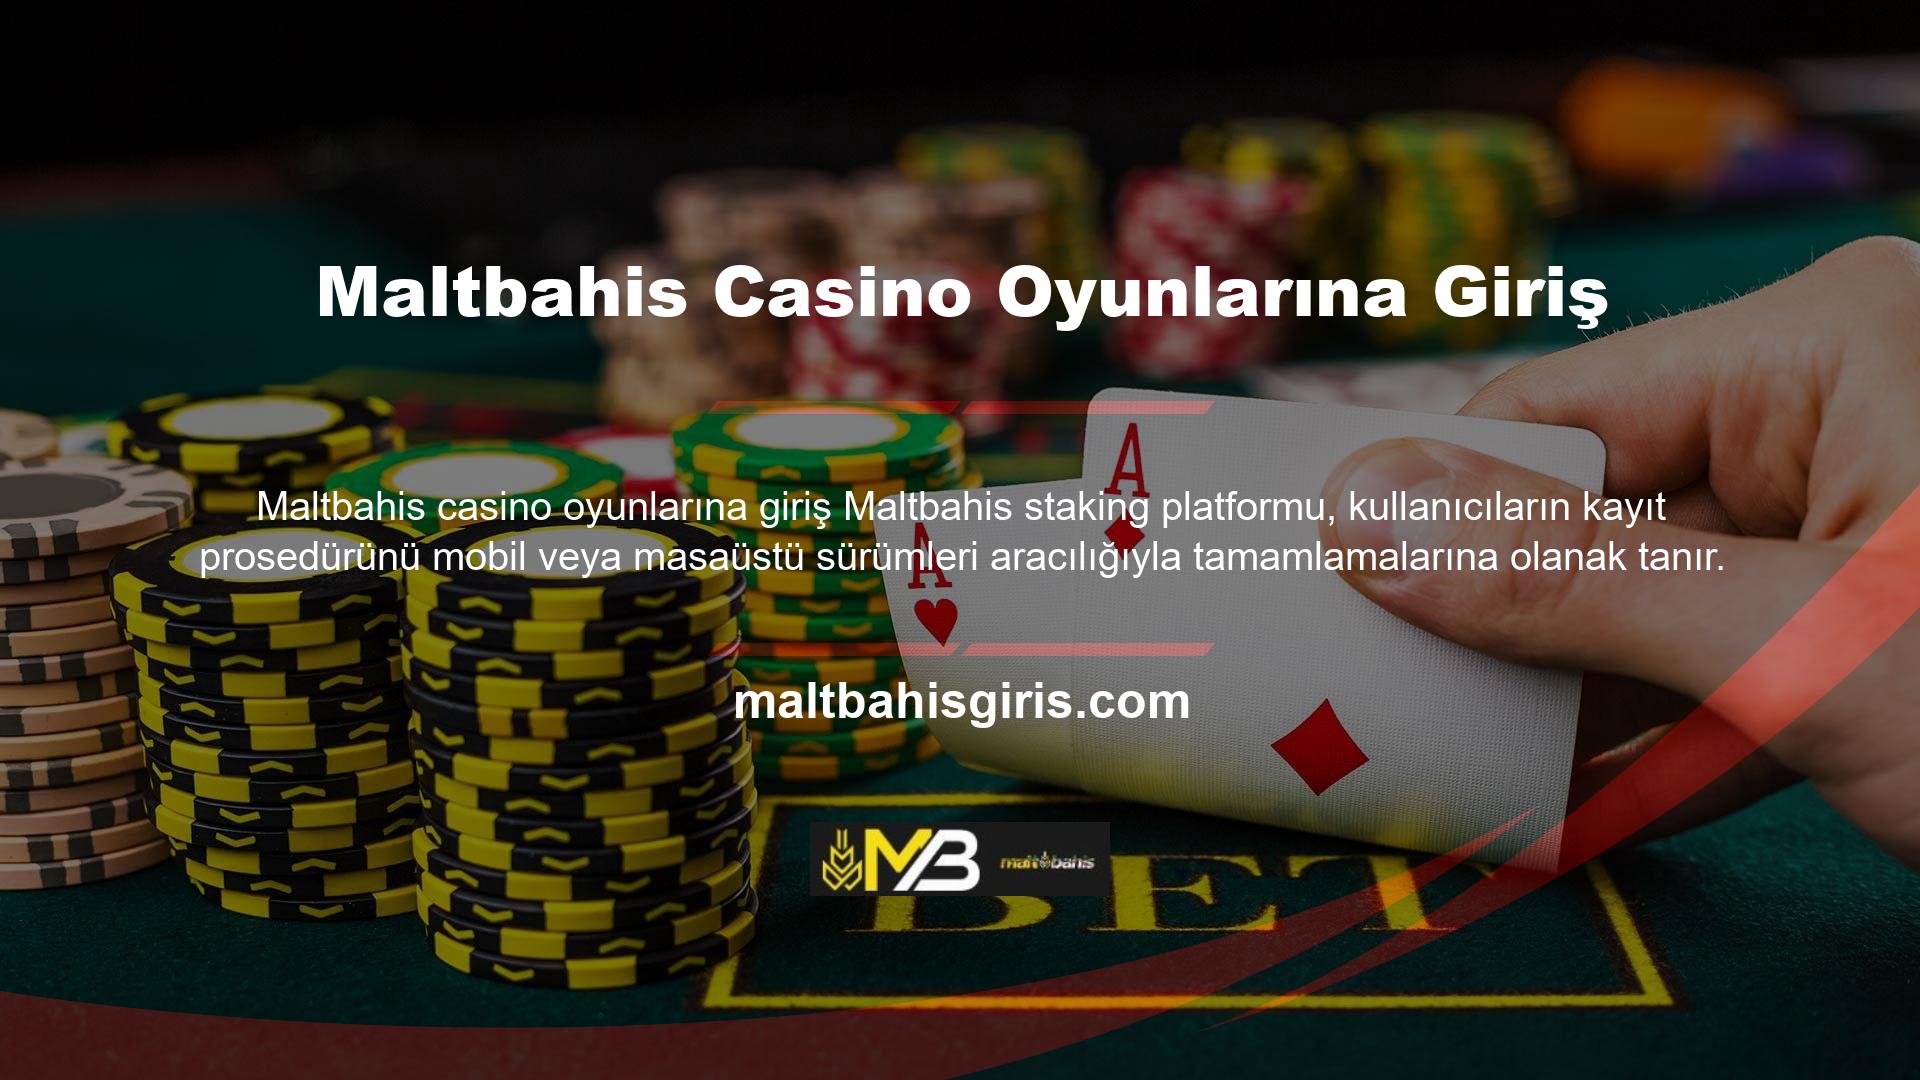 Maltbahis casino oyunlarına giriş